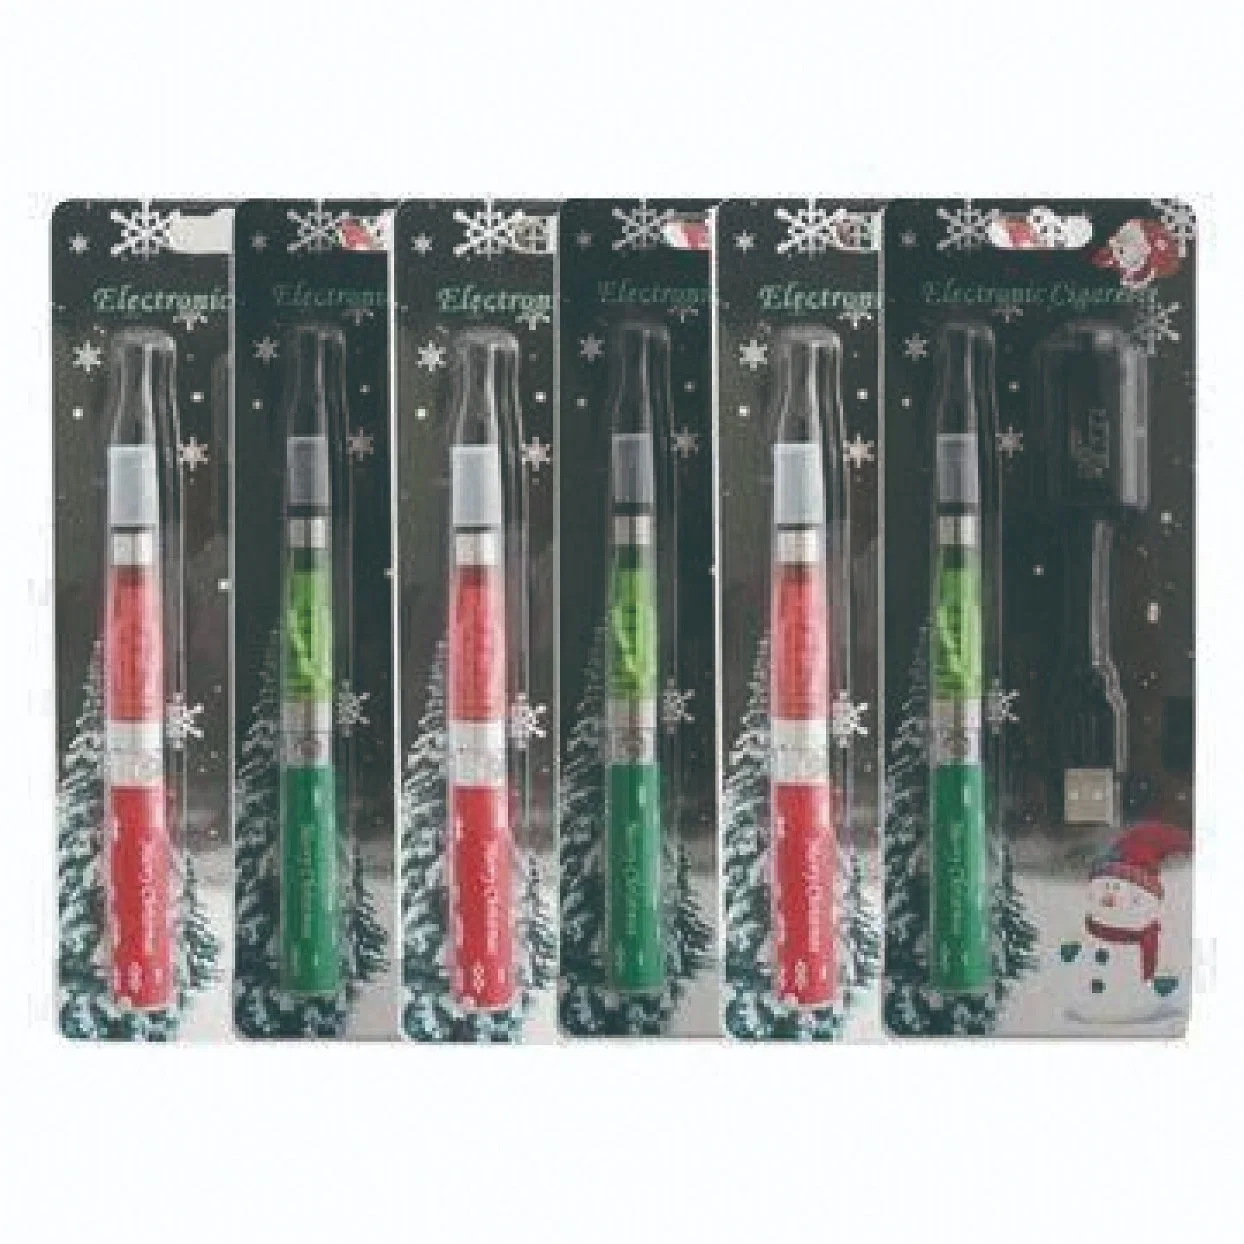 Новые продукты 2014 E-Cigarette Color, Vaporizers Wholesale CE4 EGO Starter Kits